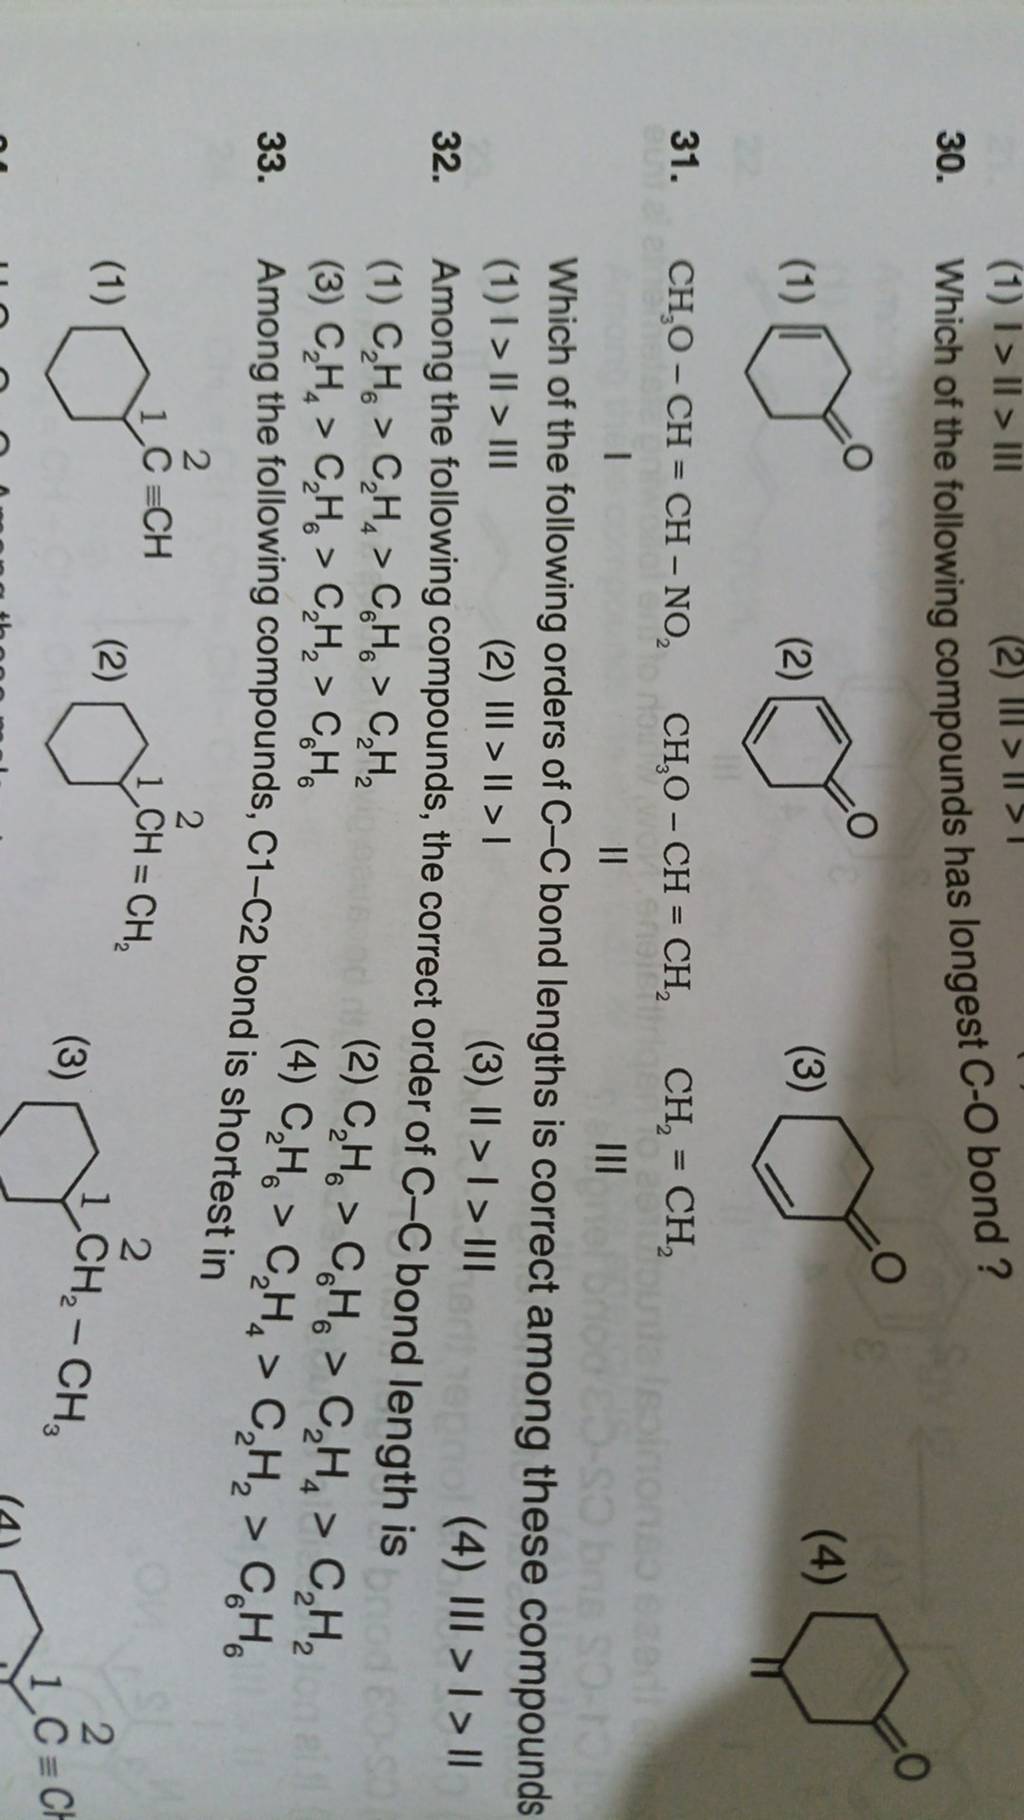 Among the following compounds, C1−C2 bond is C2 H6 >C2 H4 >C2 H2 >C6 H6